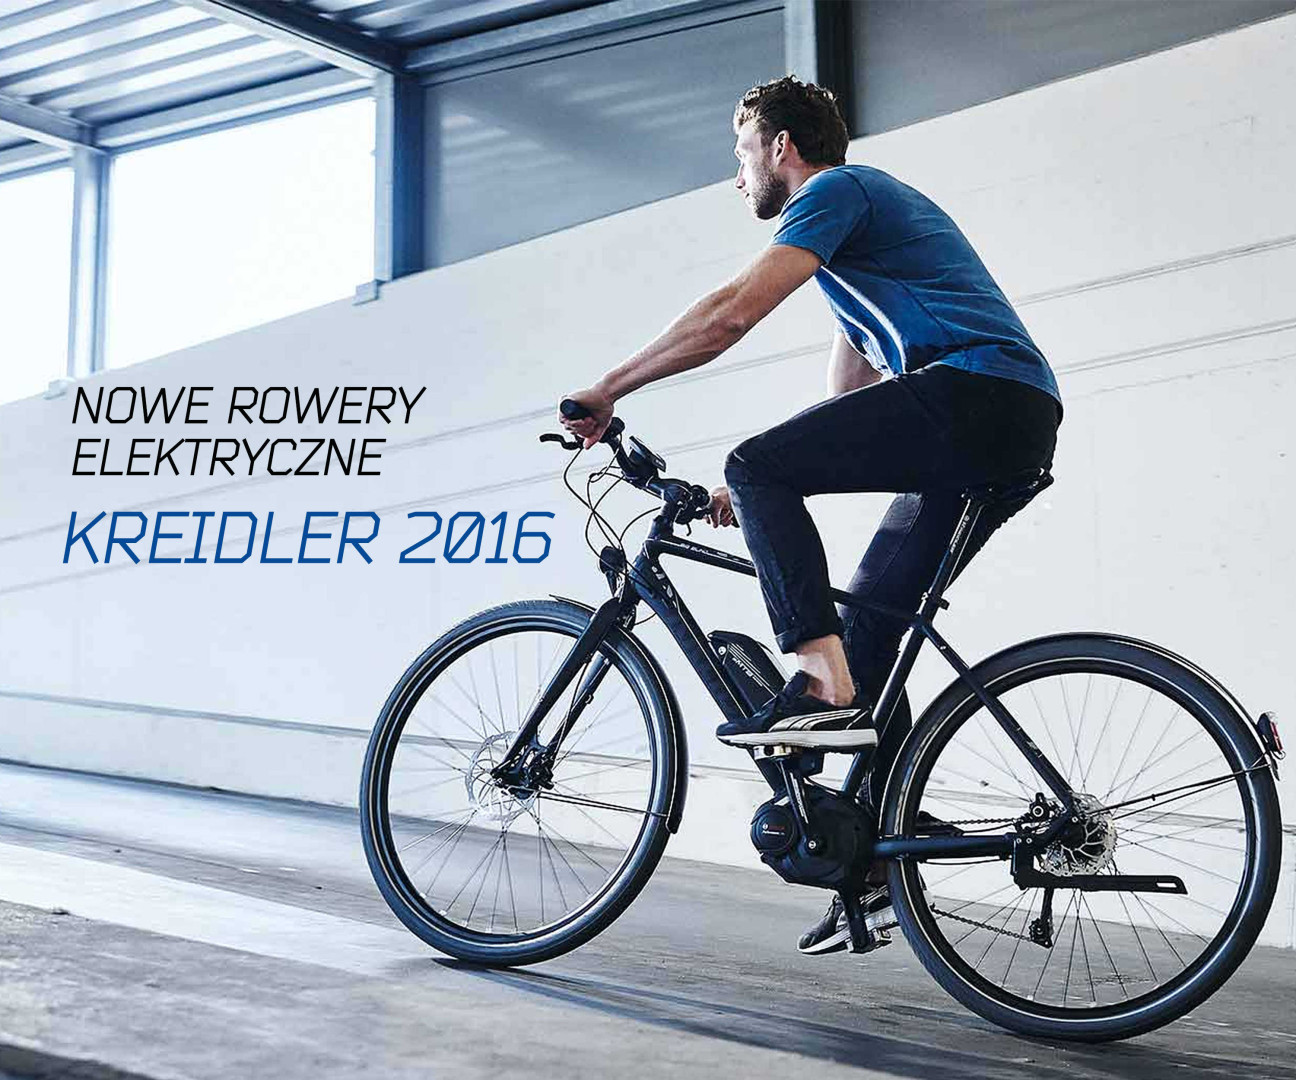 Rowery elektryczne marki Kreidler. Kolekcja 2016 to aż 27 nowych modeli [PR]